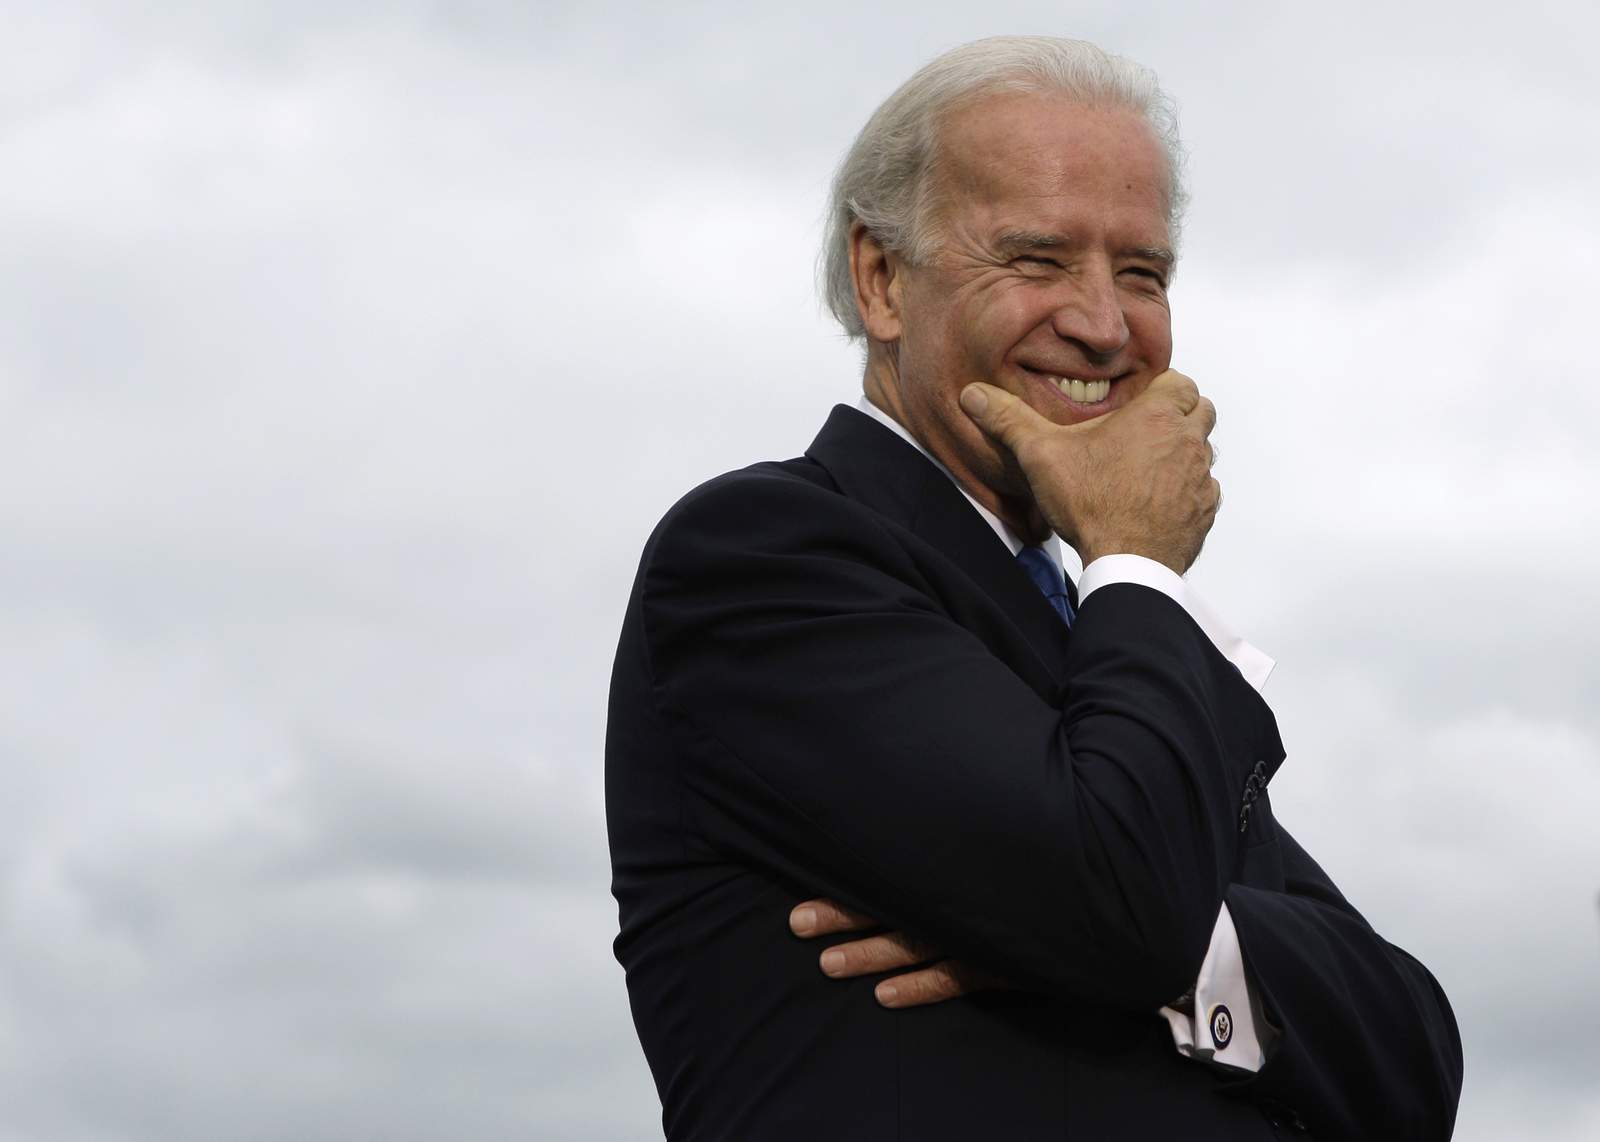 PHOTOS: Joe Biden and his decades of public life